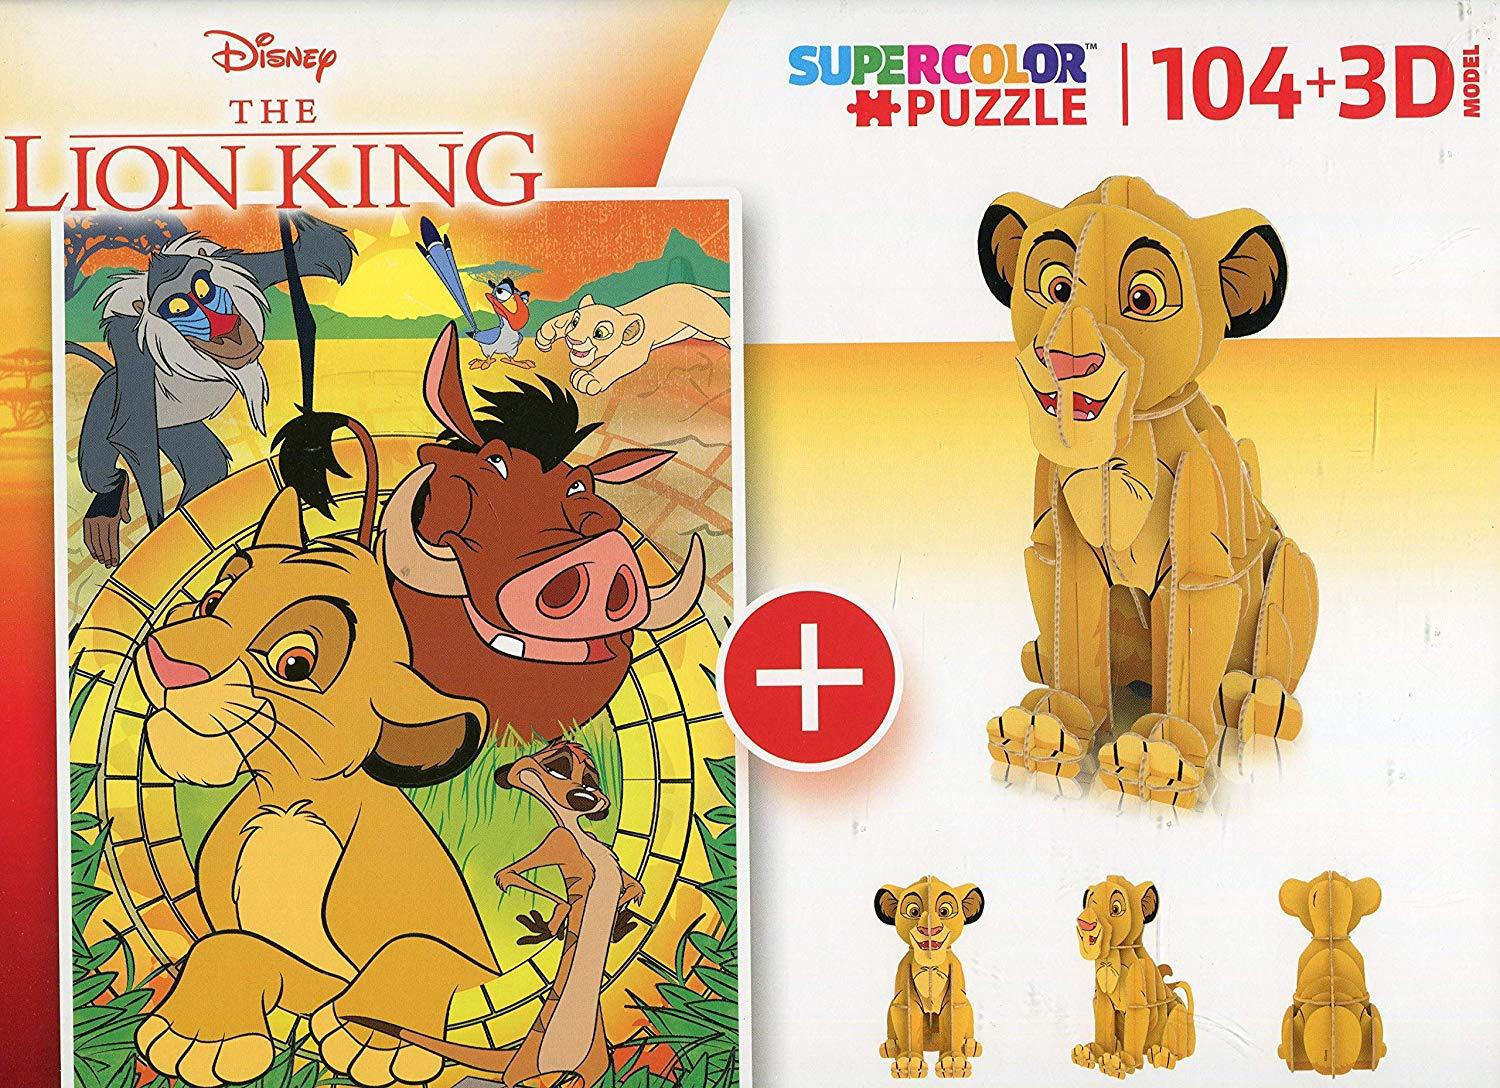 Clementoni Puzzle The Lion King 104 pieces